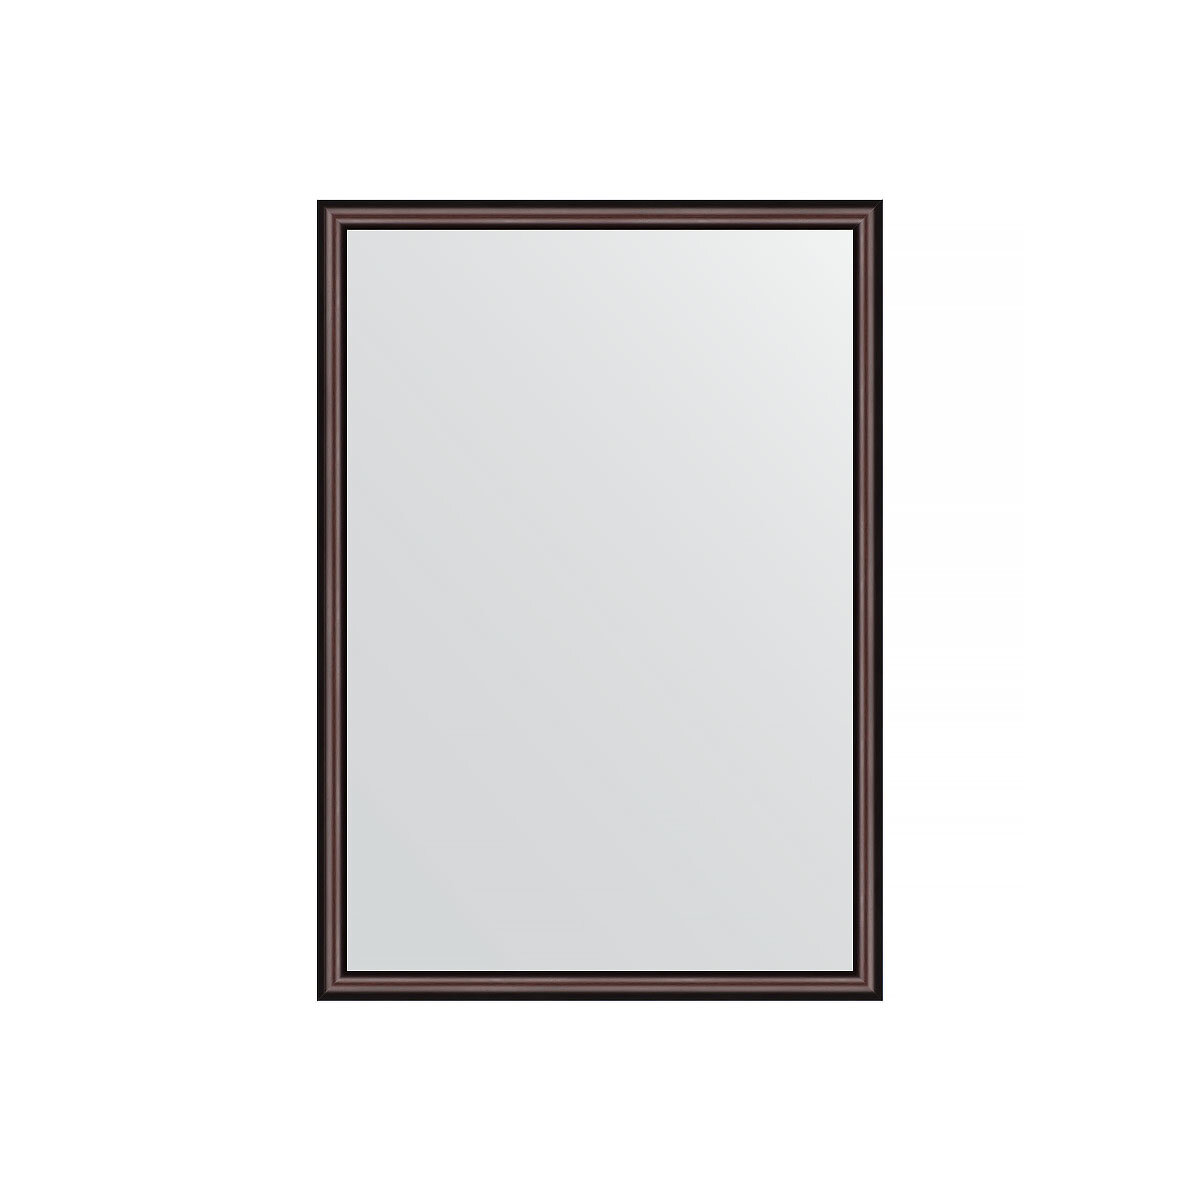 Зеркало настенное EVOFORM в багетной раме махагон, 48х68 см, для гостиной, прихожей, кабинета, спальни и ванной комнаты, BY 0621